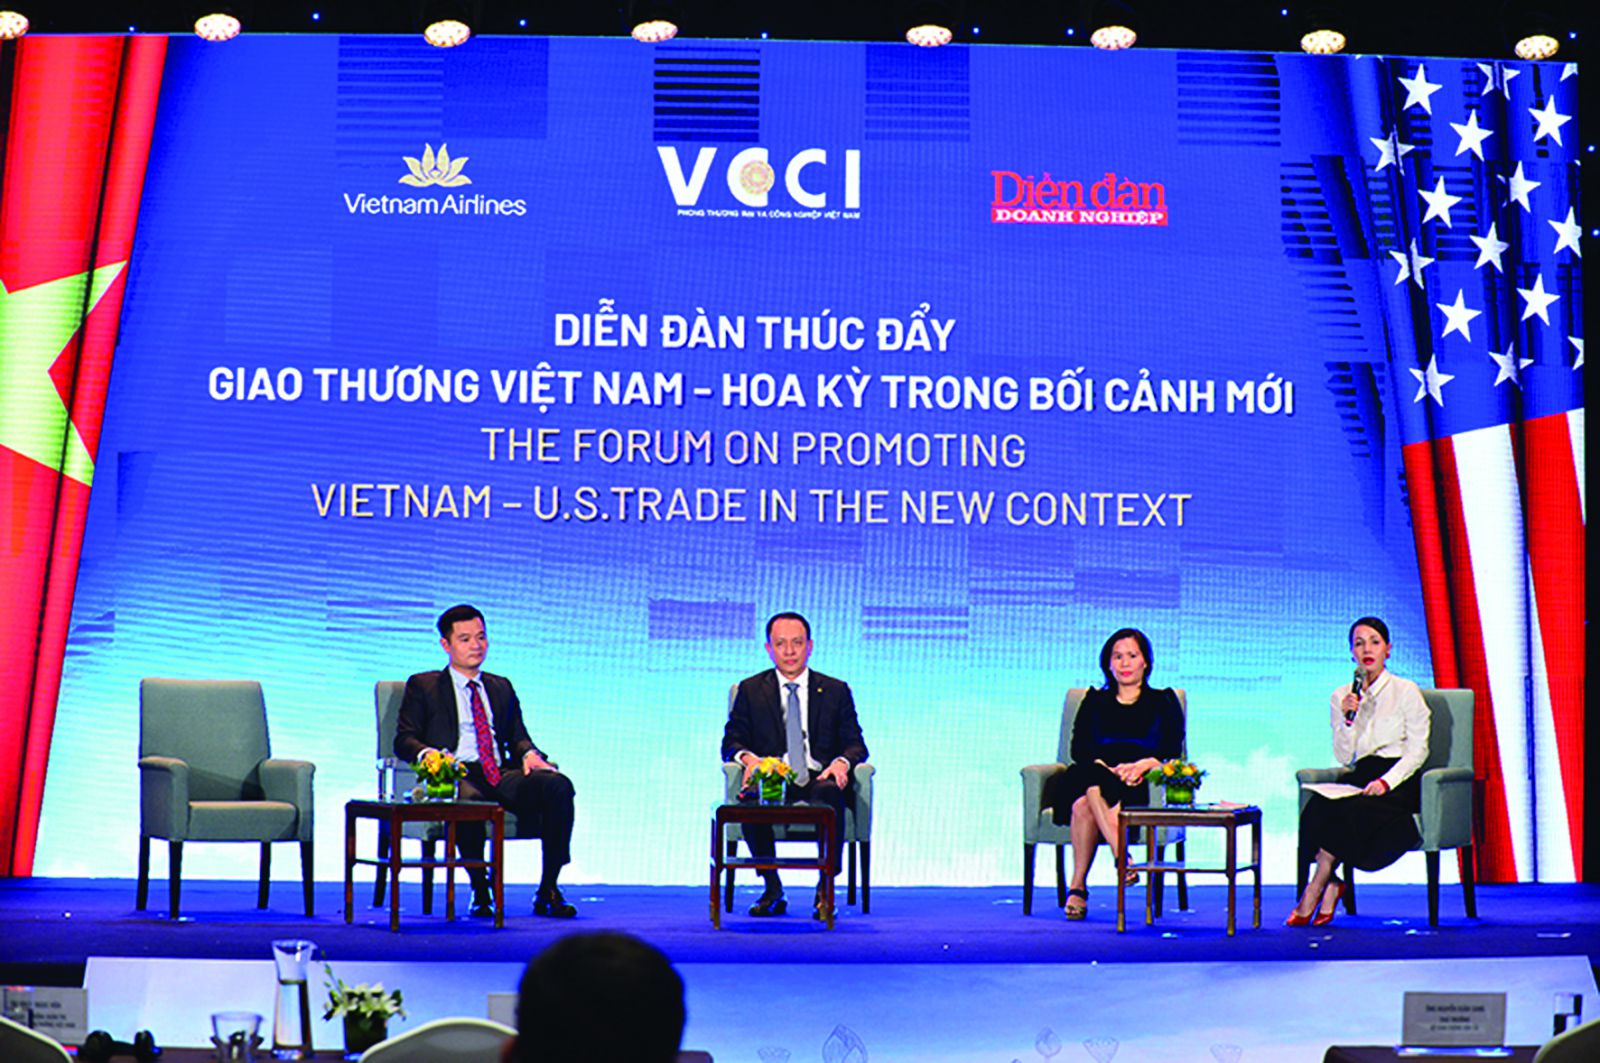  Mỹ cần hợp tác với Việt Nam tại khu vực Châu Á để tạo ra chuỗi giá trị mới không có sự hiện diện của Trung Quốc.p/(Ảnh: Diễn đàn “Thúc đẩy Thương mại Việt Nam – Hoa Kỳ trong hoàn cảnh mới” do Tạp chí Diễn đàn Doanh nghiệp tổ chức)